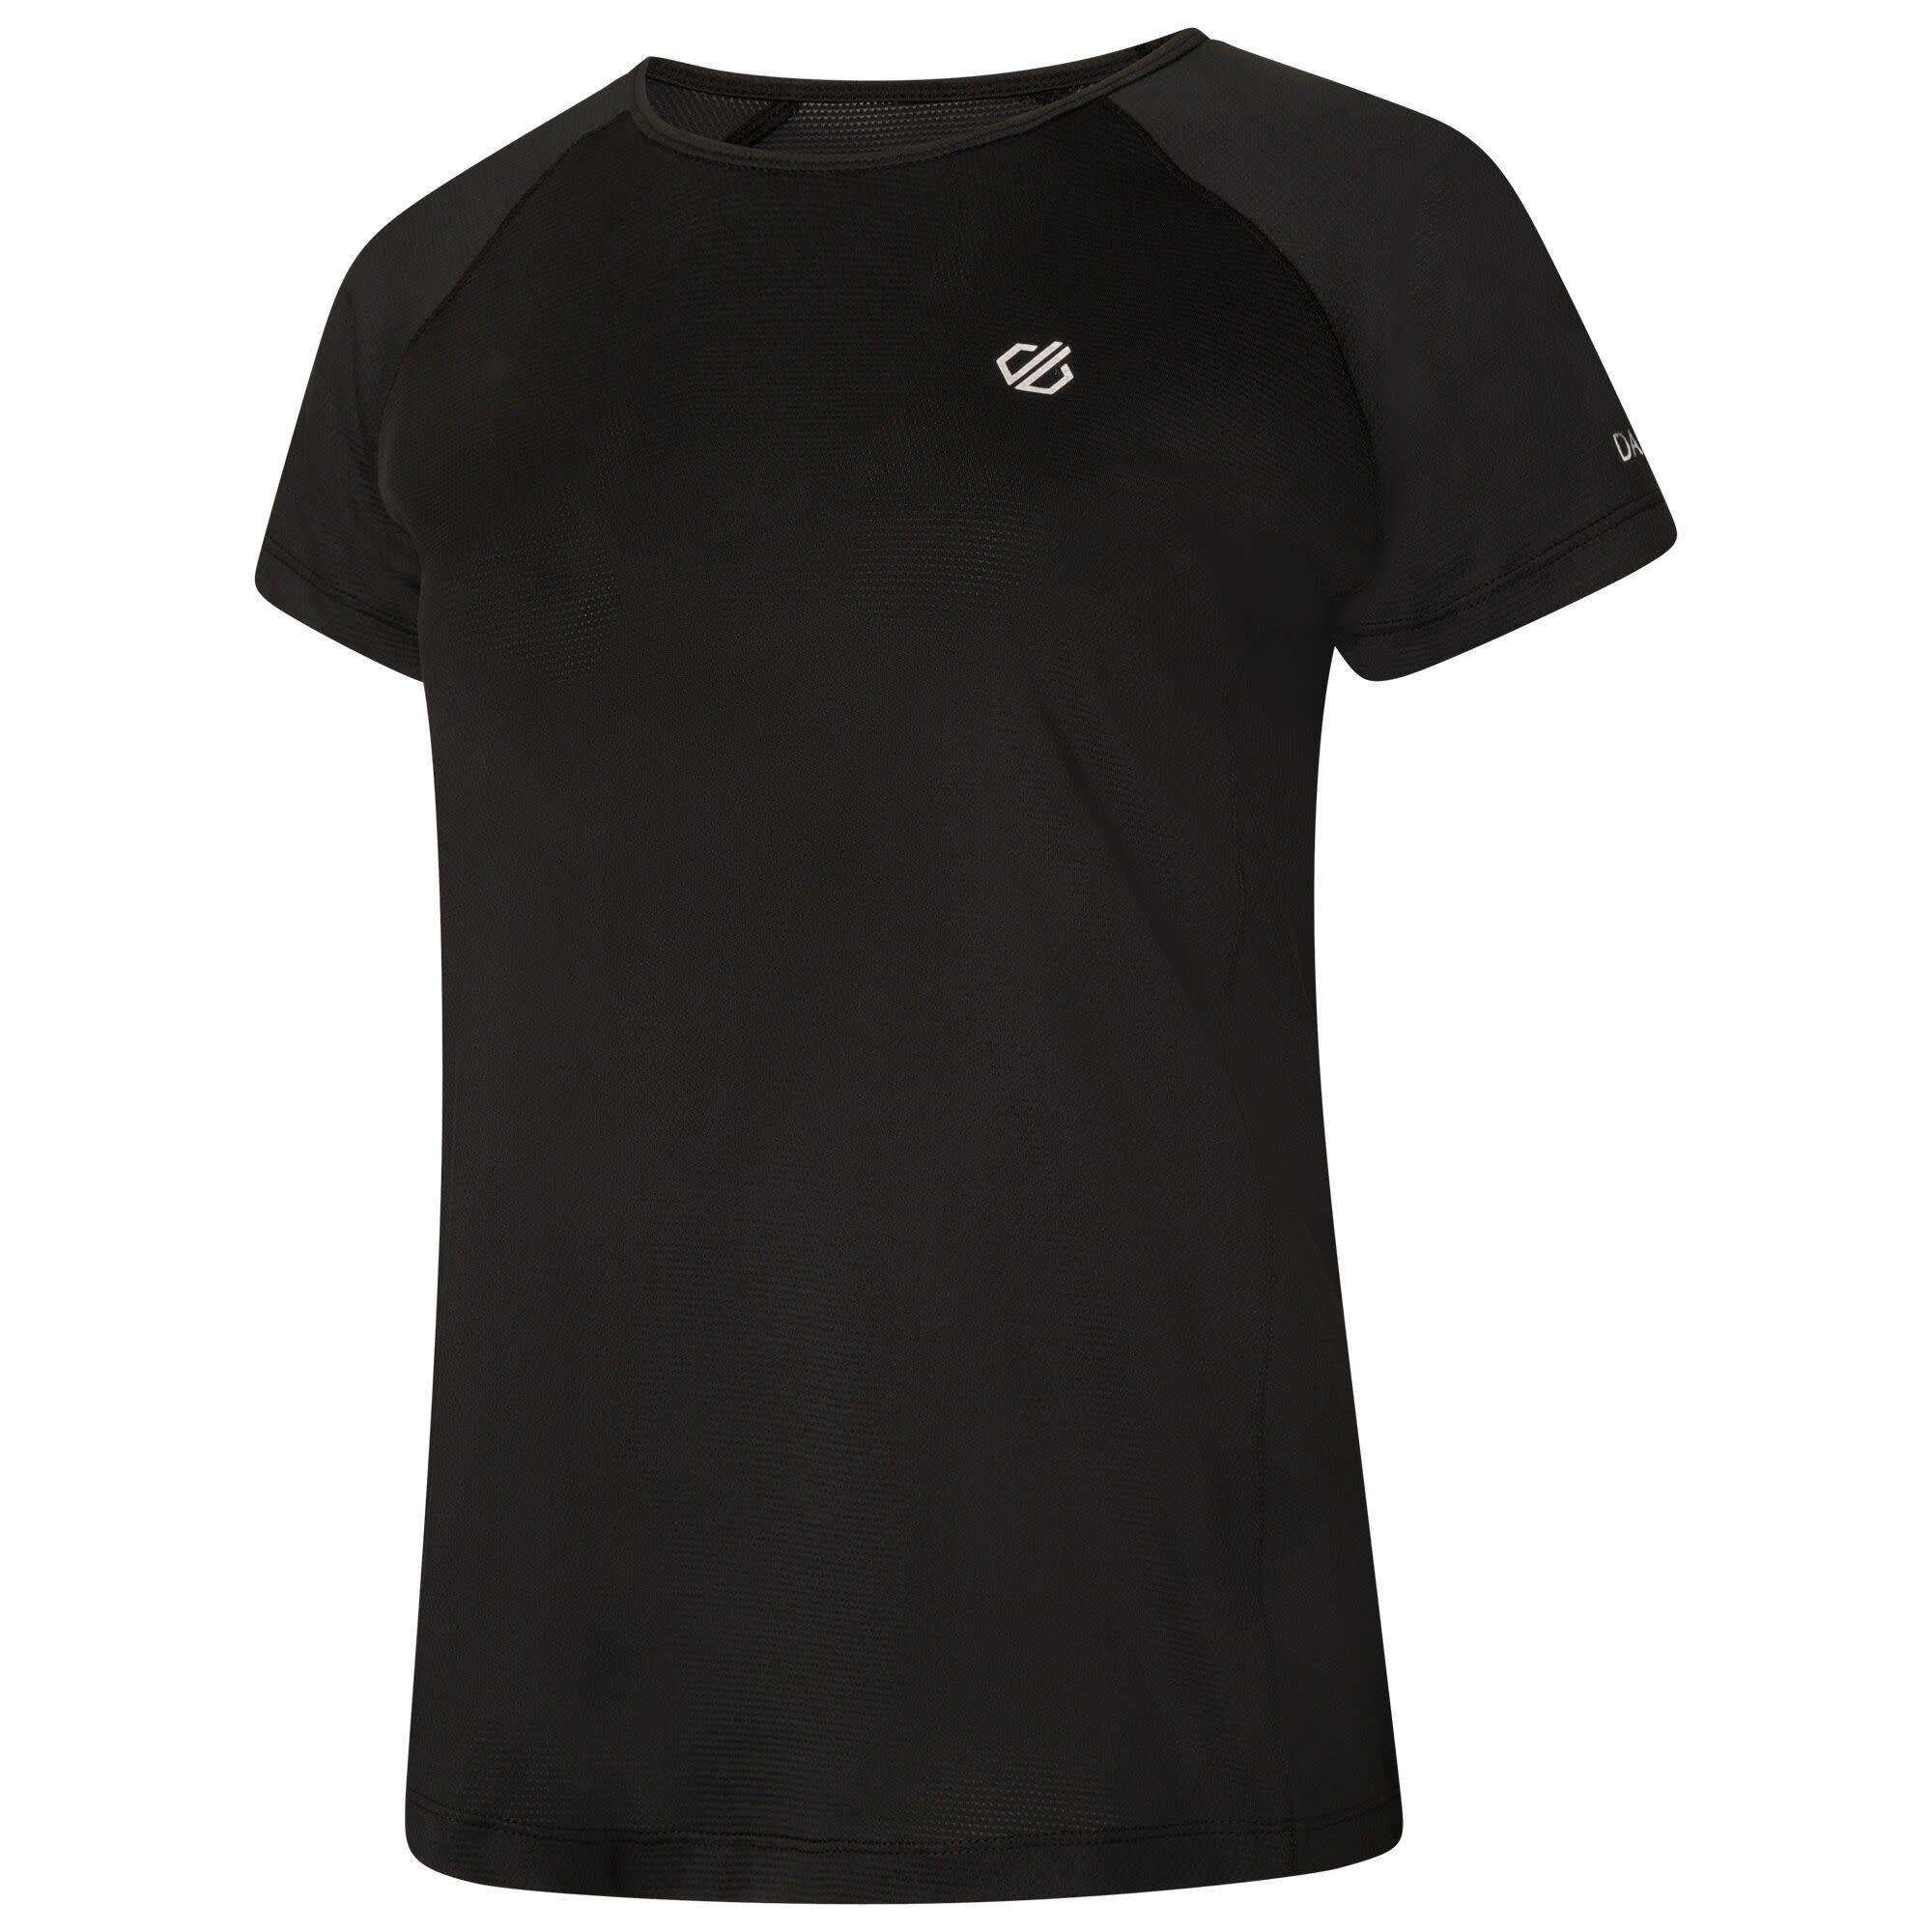 Corral Women's Fitness Short Sleeve T-Shirt - Black 6/7